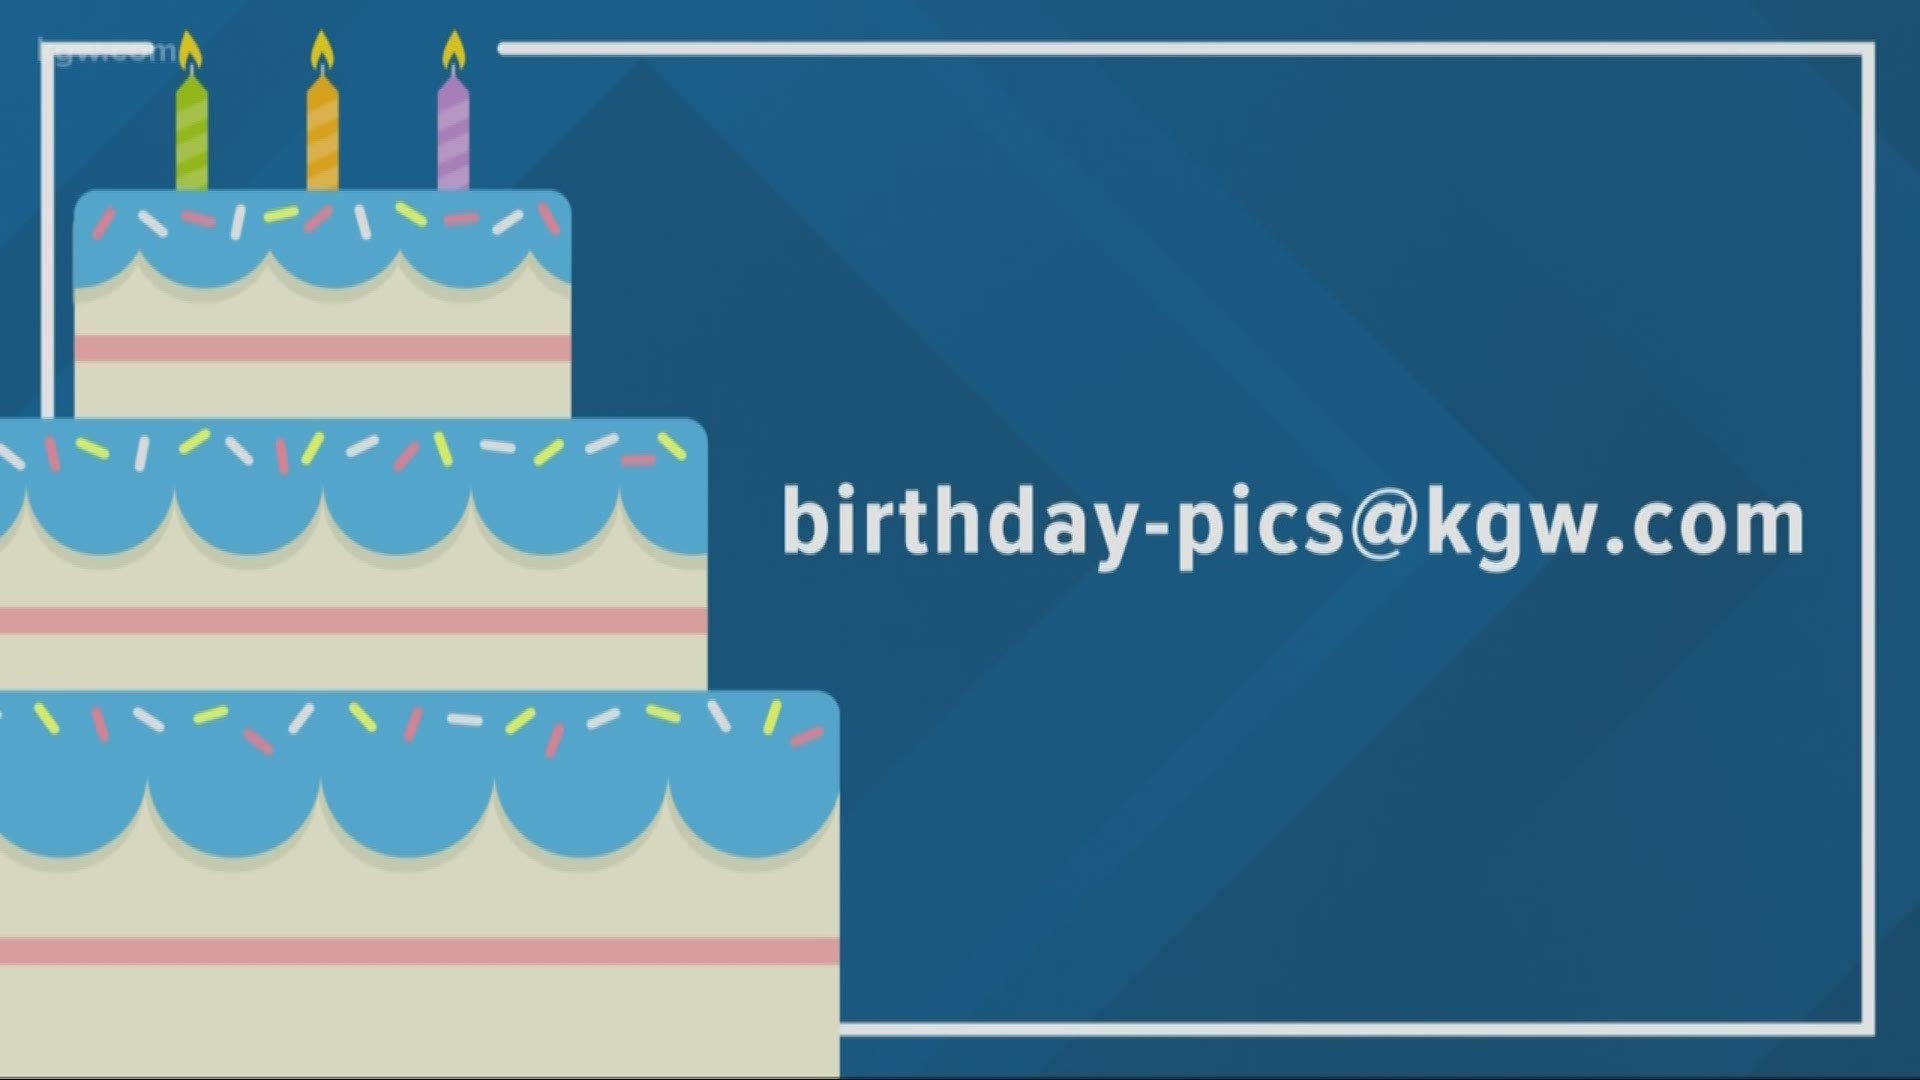 KGW viewer birthdays: 1-17-19